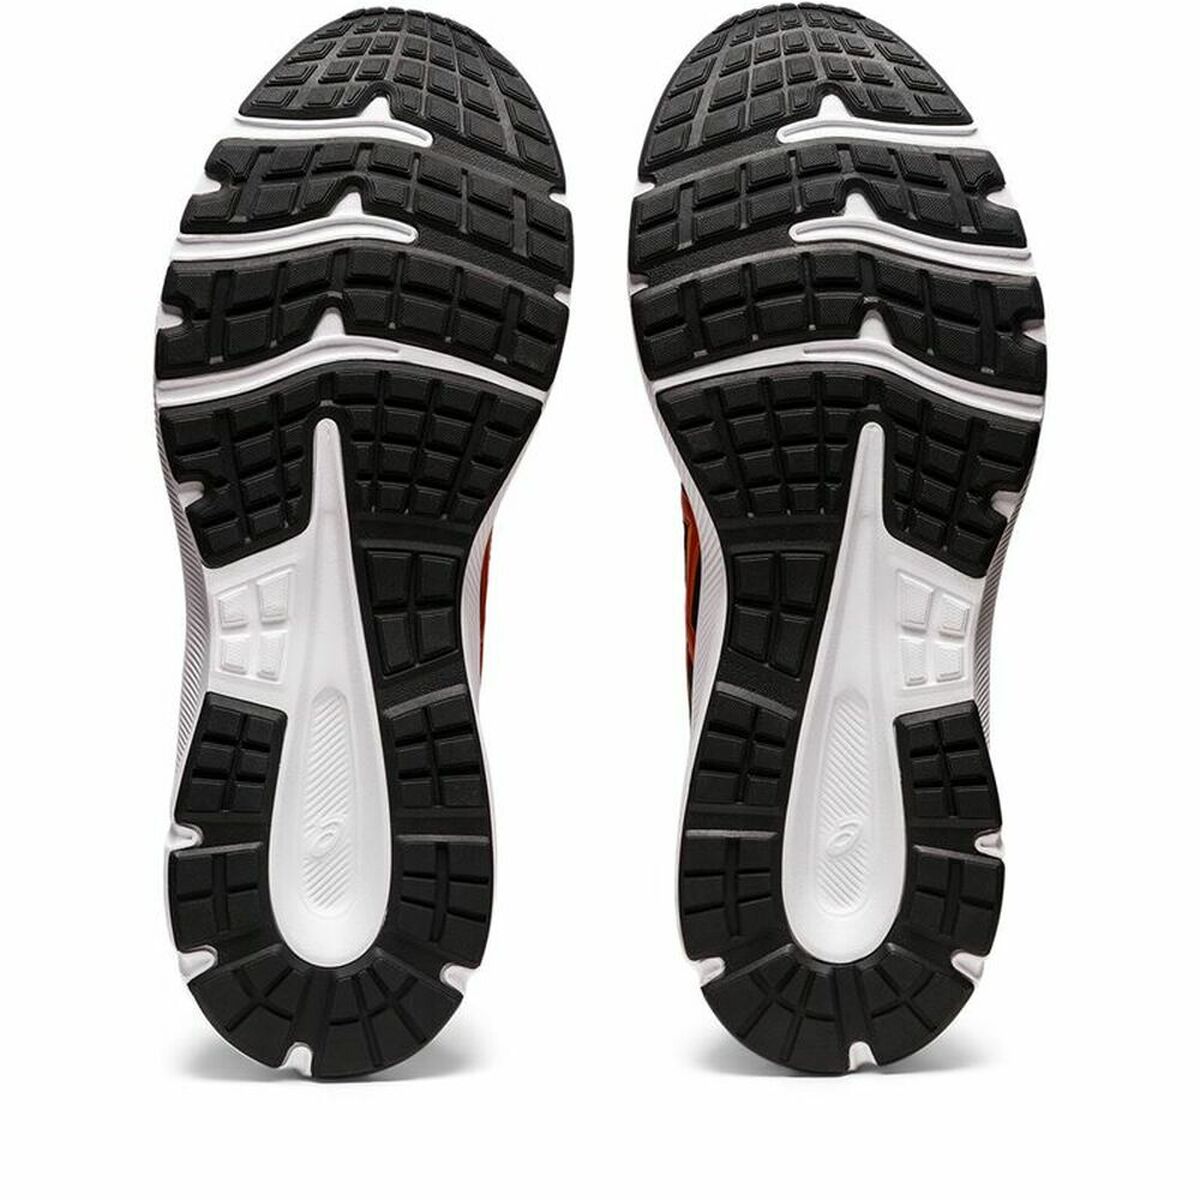 Chaussures de Running pour Adultes Asics  Jolt 3  Orange/Noir Noir